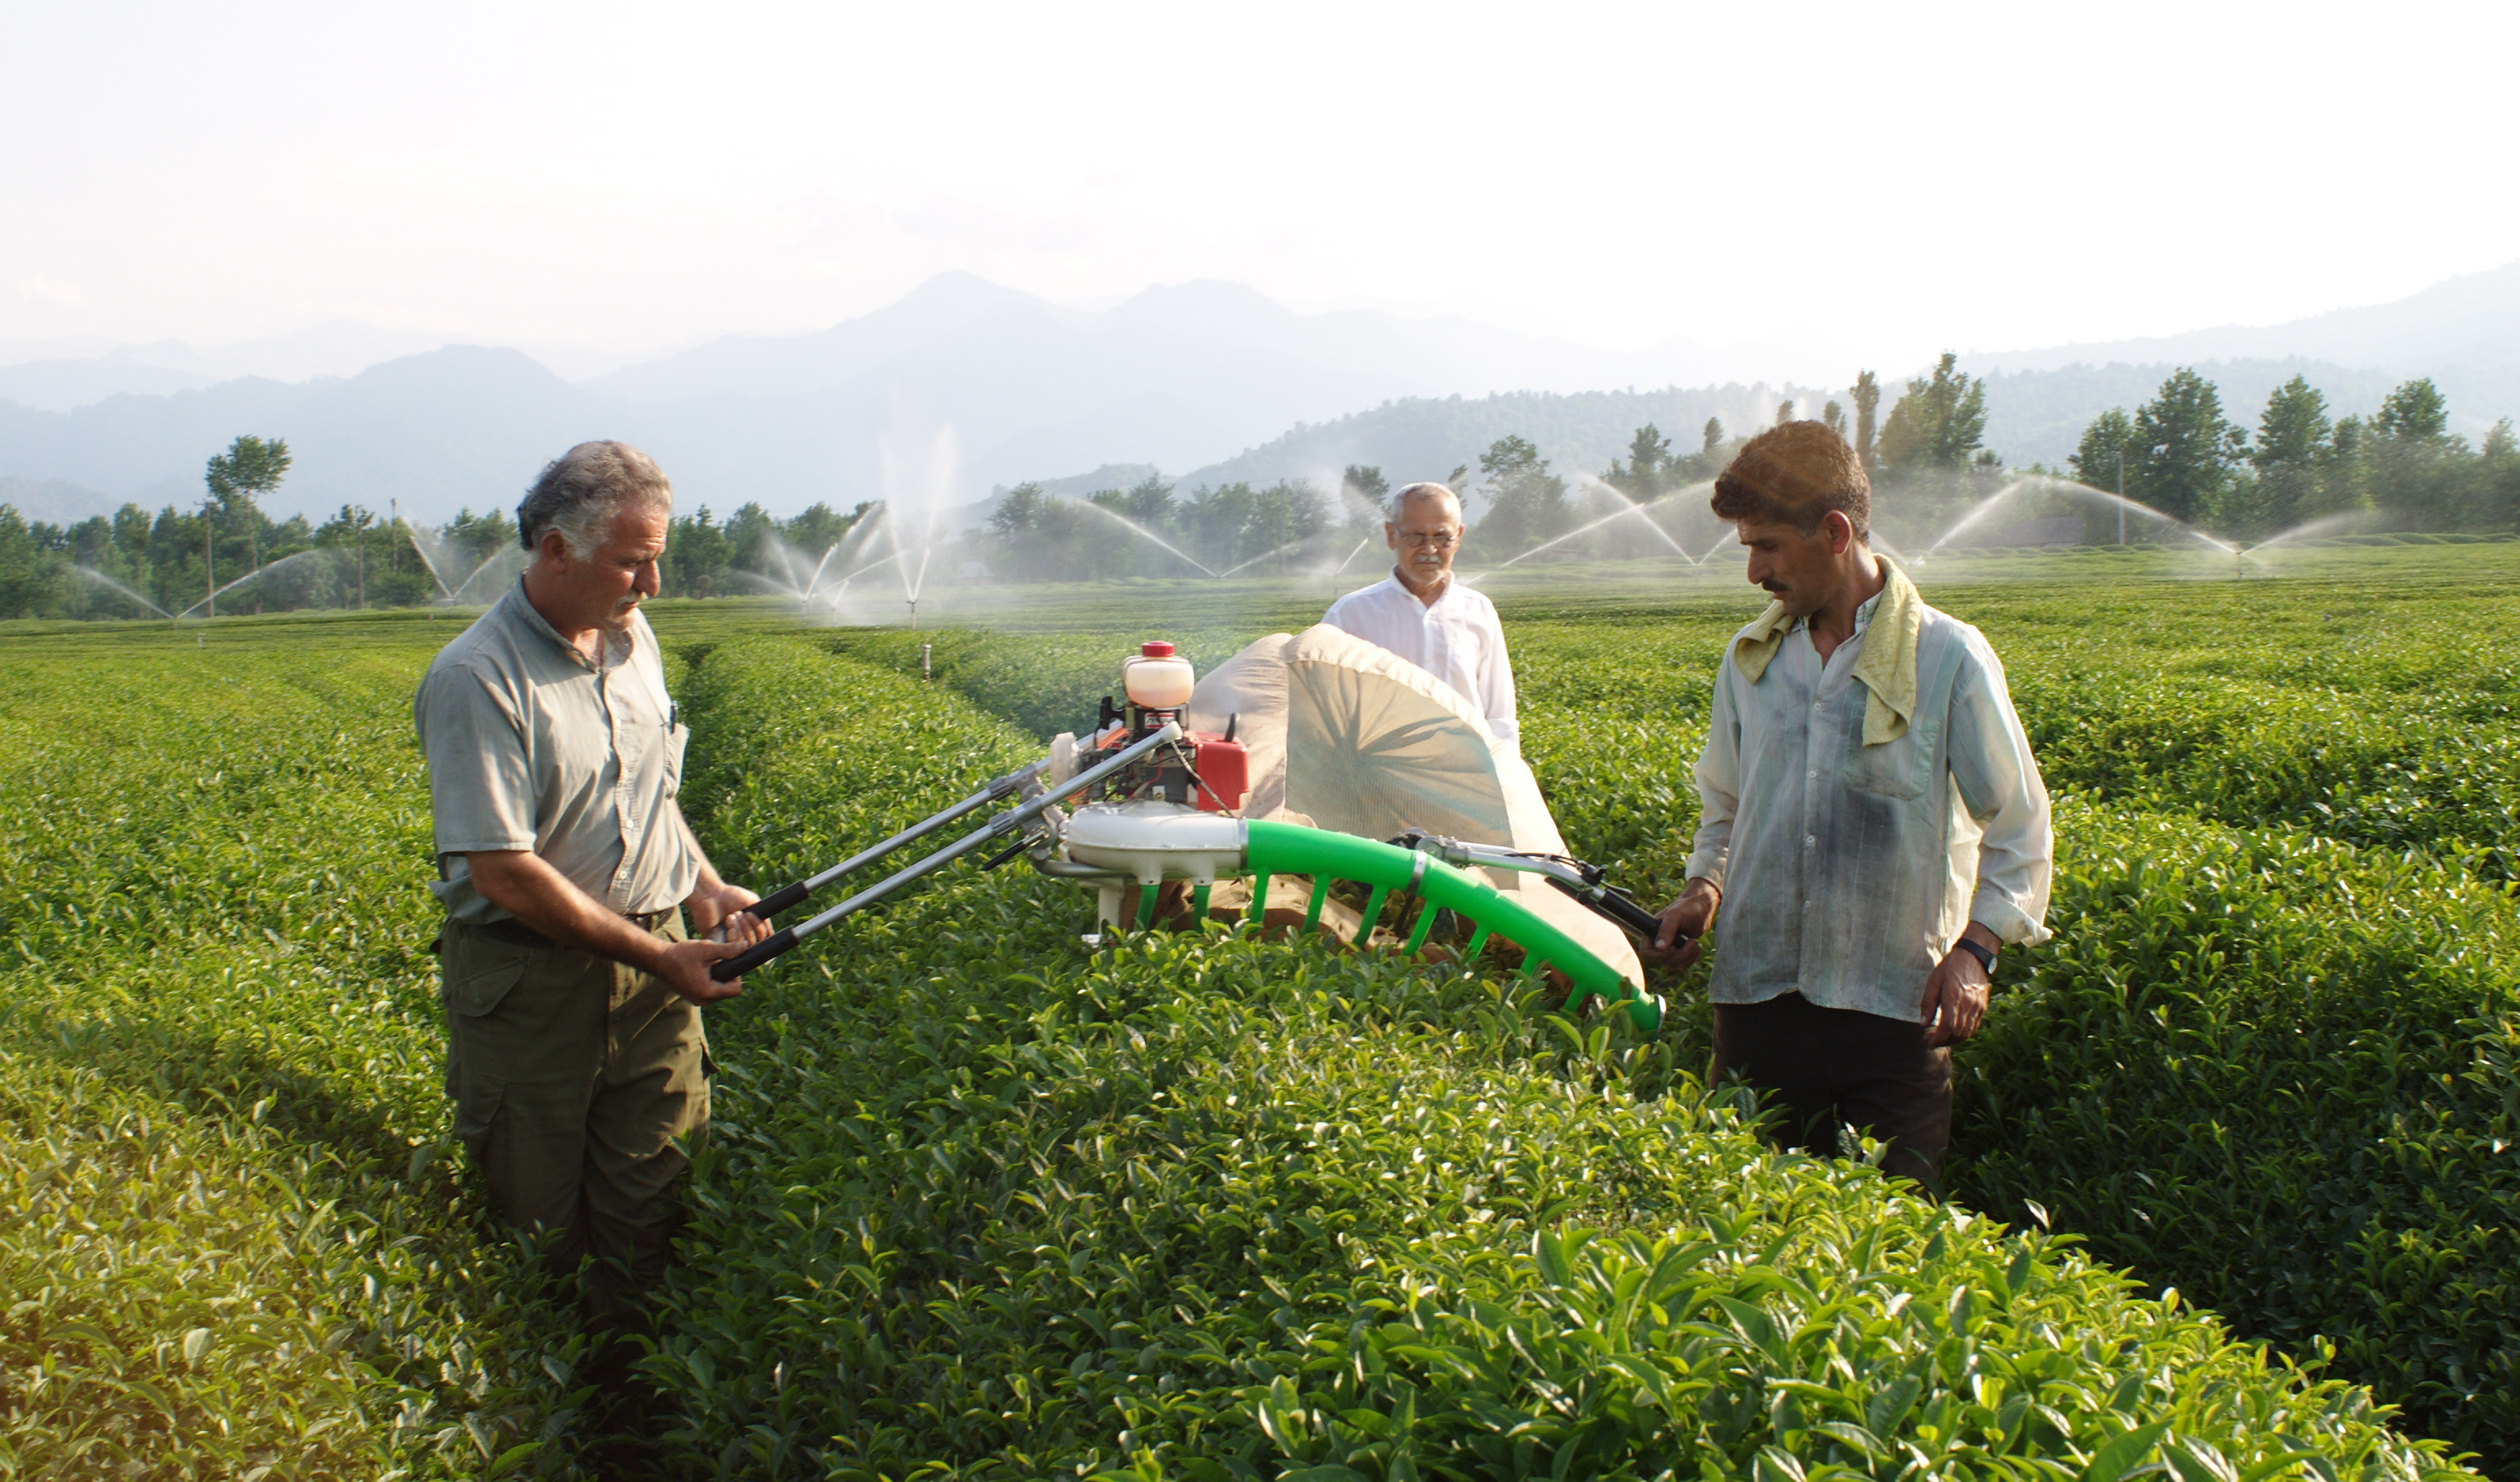 رشد ۲۷.۷ درصدی قیمت خرید تضمینی برگ سبز چای در سال ۹۹